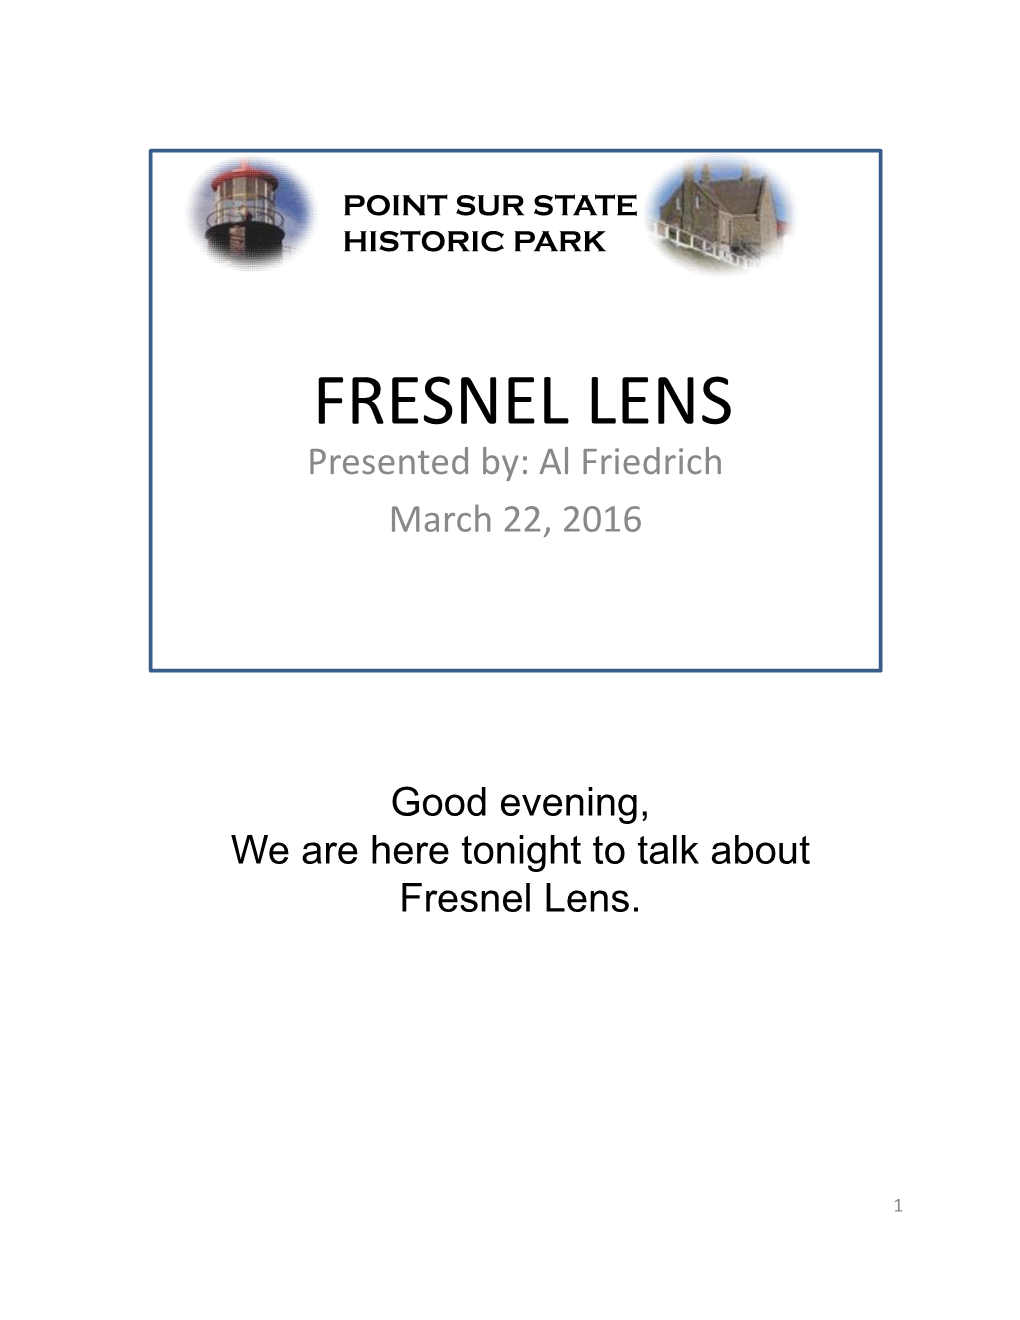 FRESNEL LENS Presented By: Al Friedrich March 22, 2016